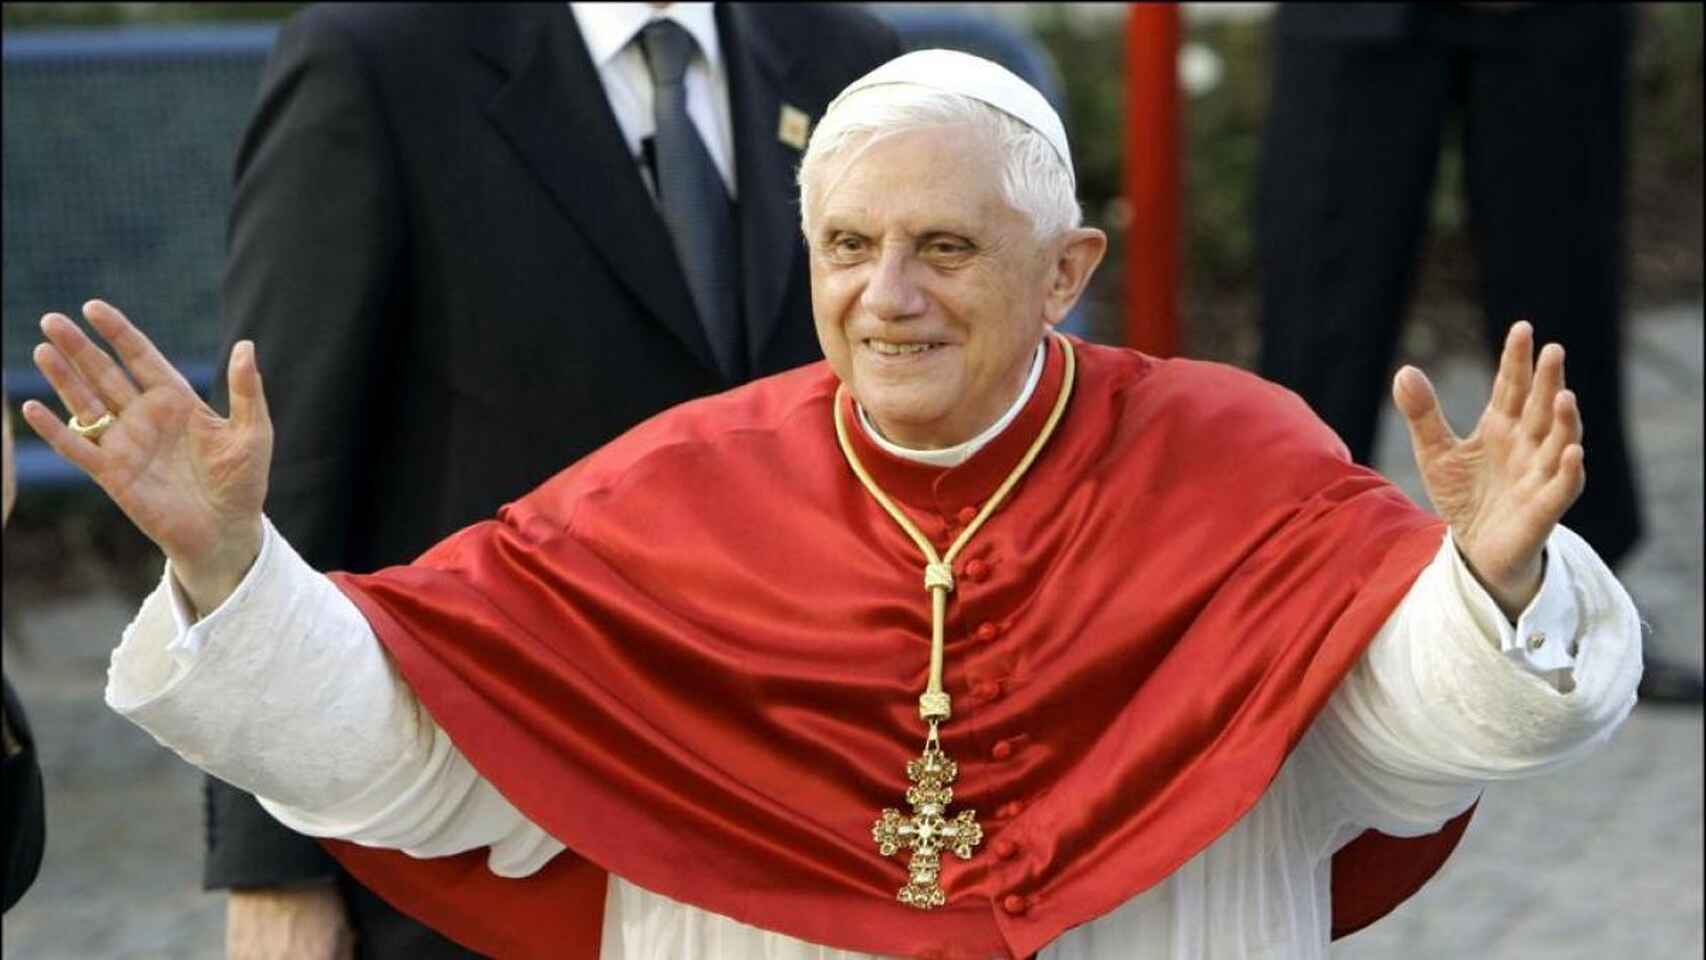 Benedicto XVI, en una imagen de archivo.